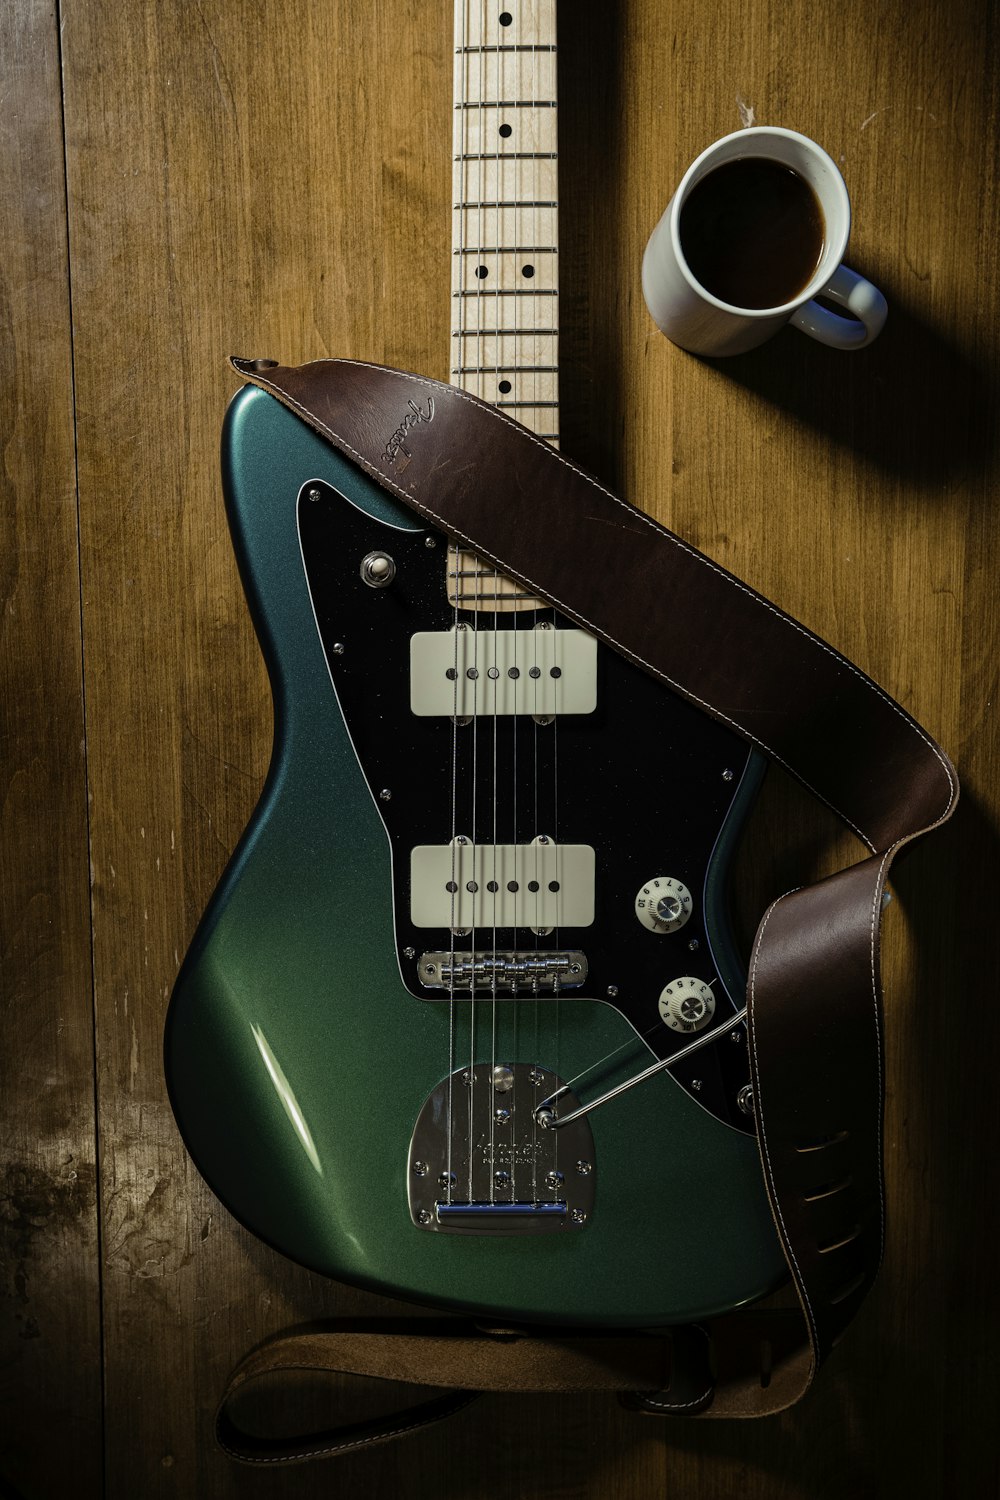 Une guitare verte posée sur une table à côté d’une tasse de café